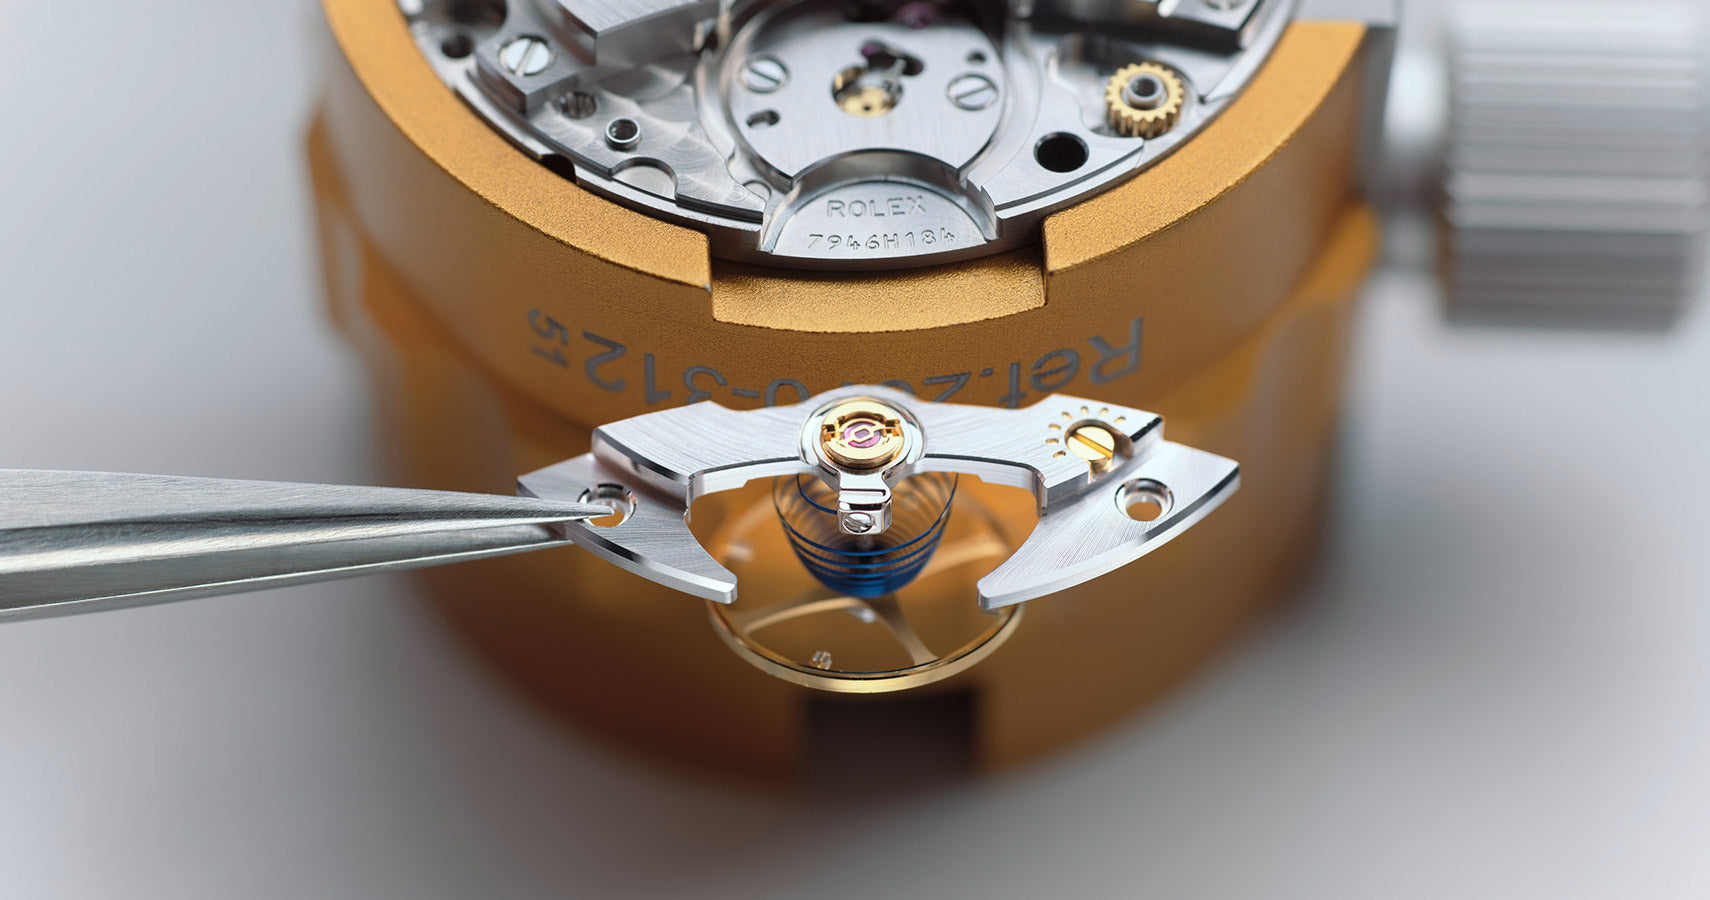 Rolex watch under repair